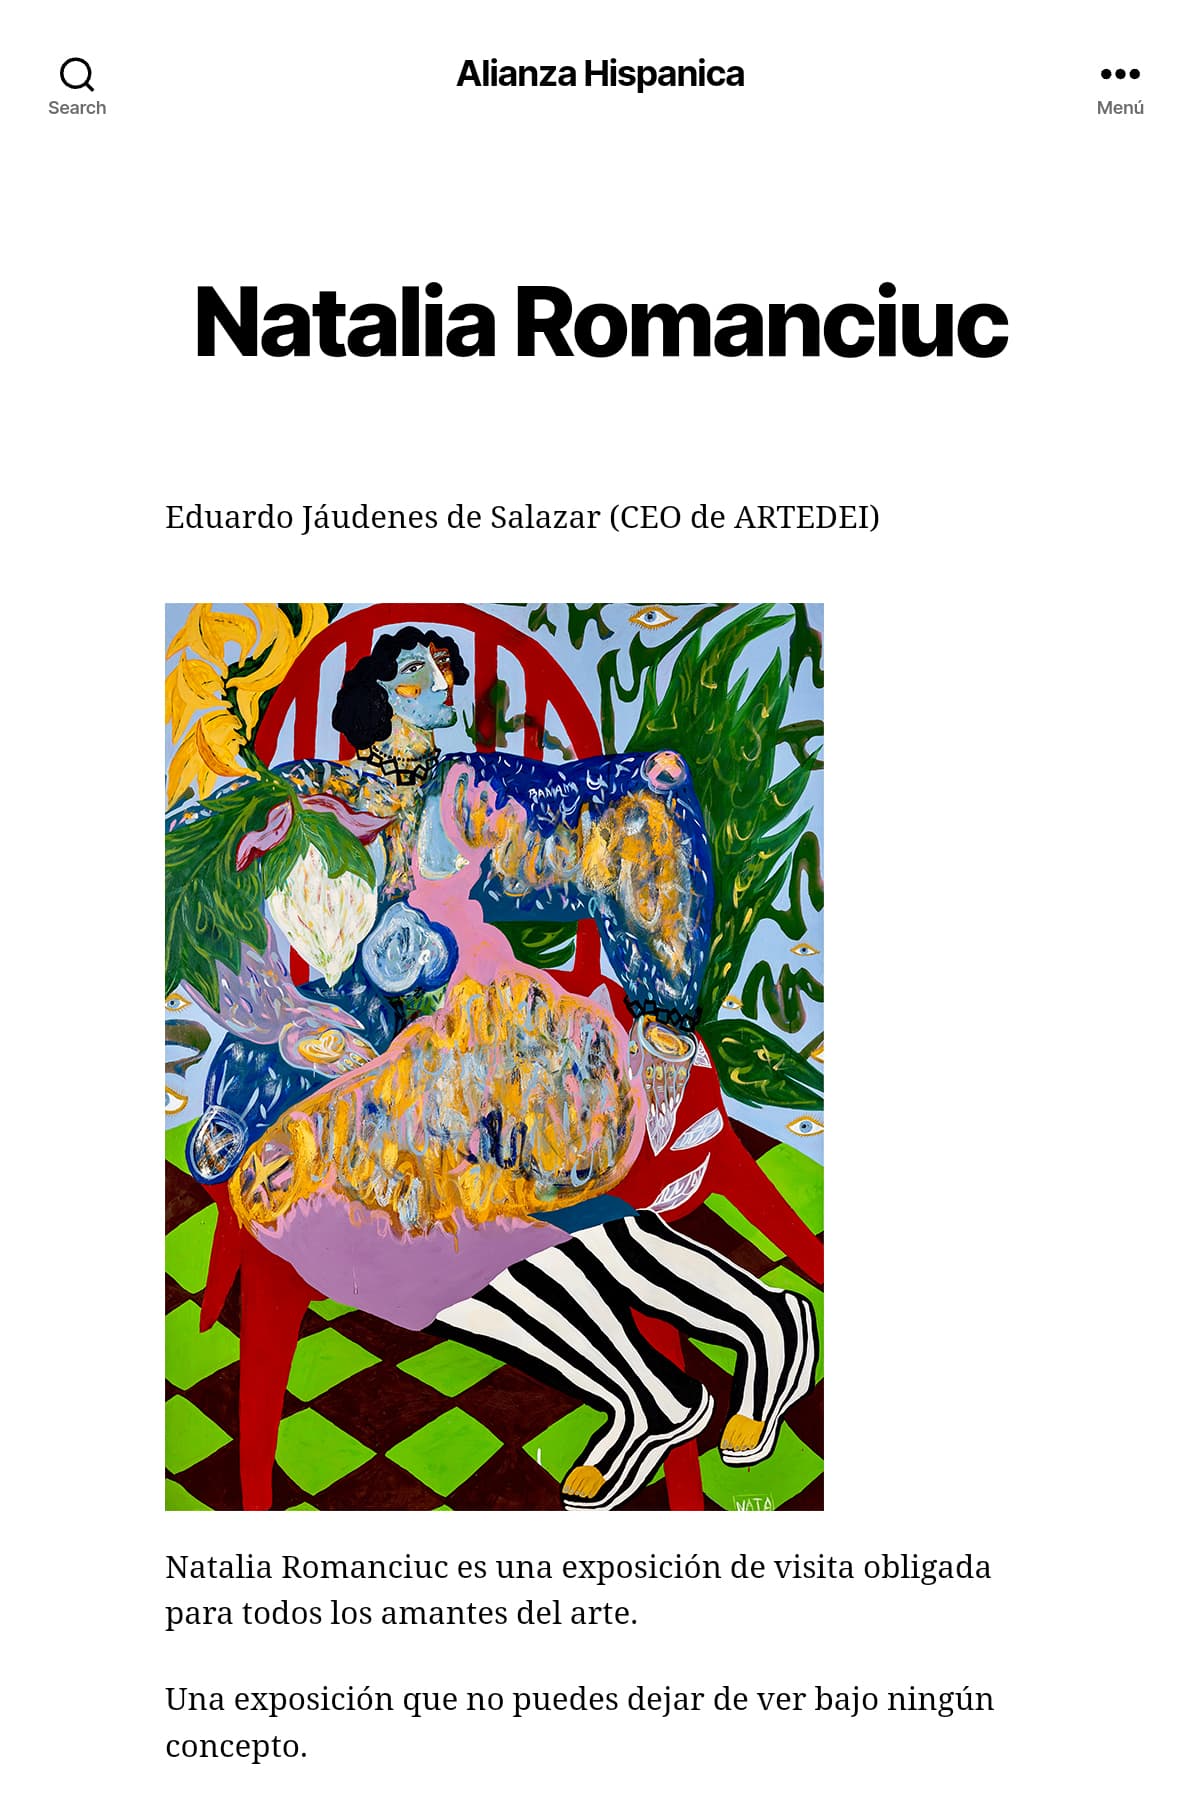 ARMA GALLERY - Contemporary Art - Press - Alianza Hispánica - Natalia Romanciuc